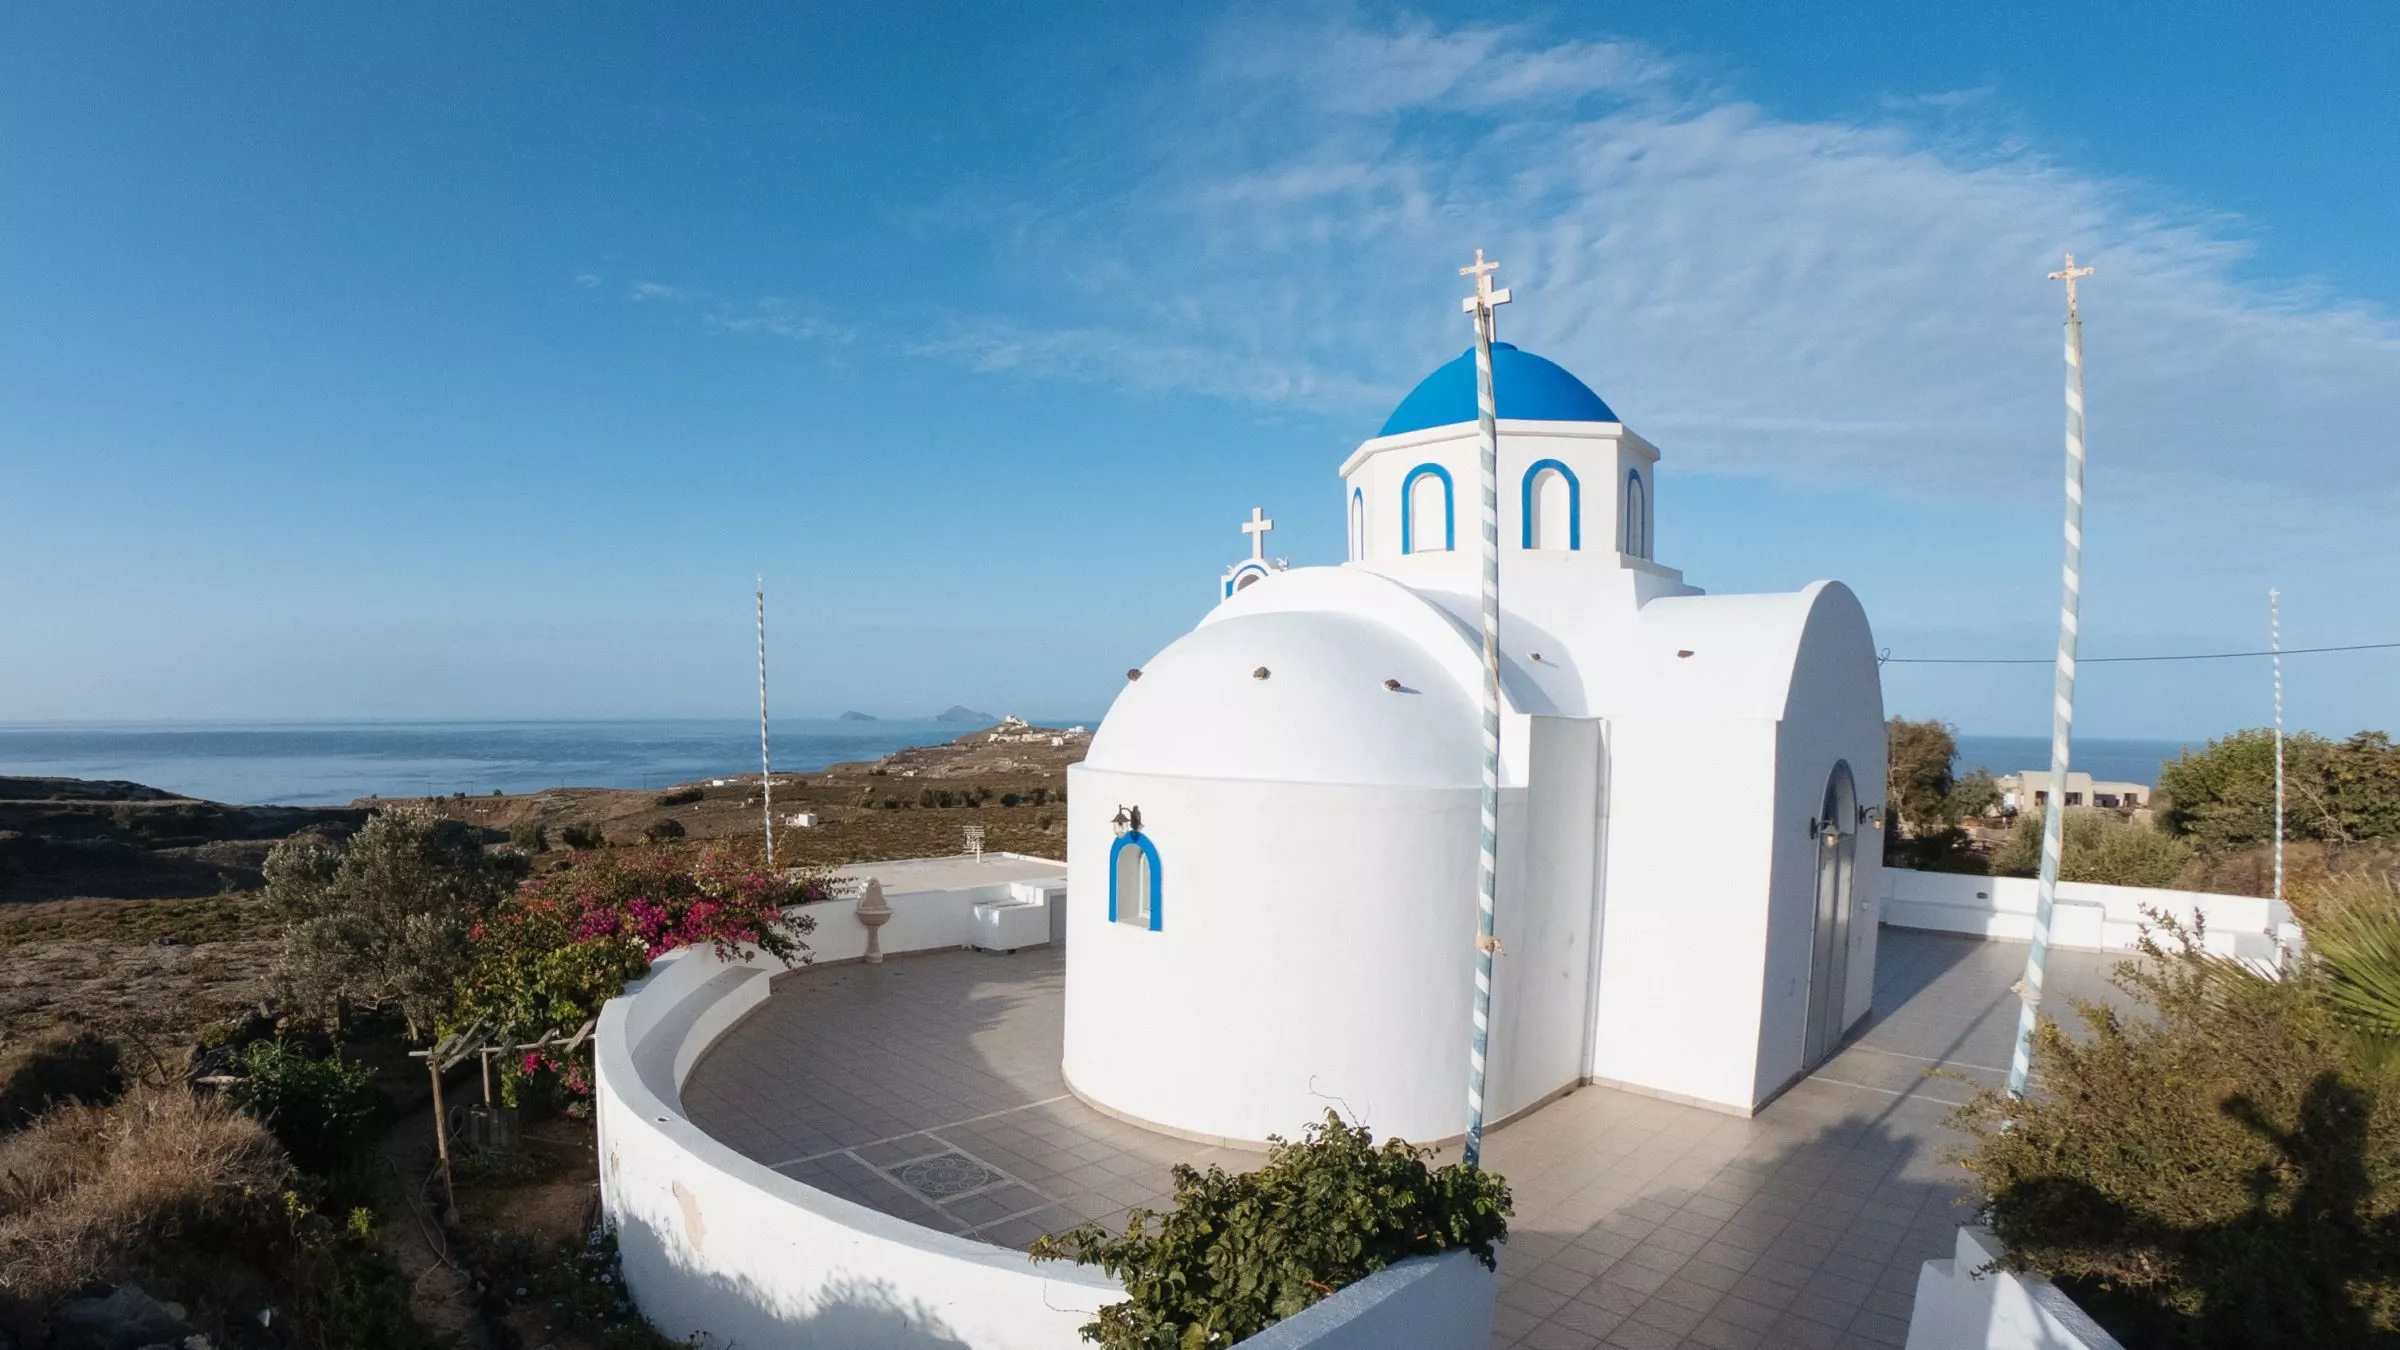 Die Kirchen fallen mit ihren blauen Kuppeln besonders auf –auf Santorin gibt es übrigens 475 Kirchen und Kapellen